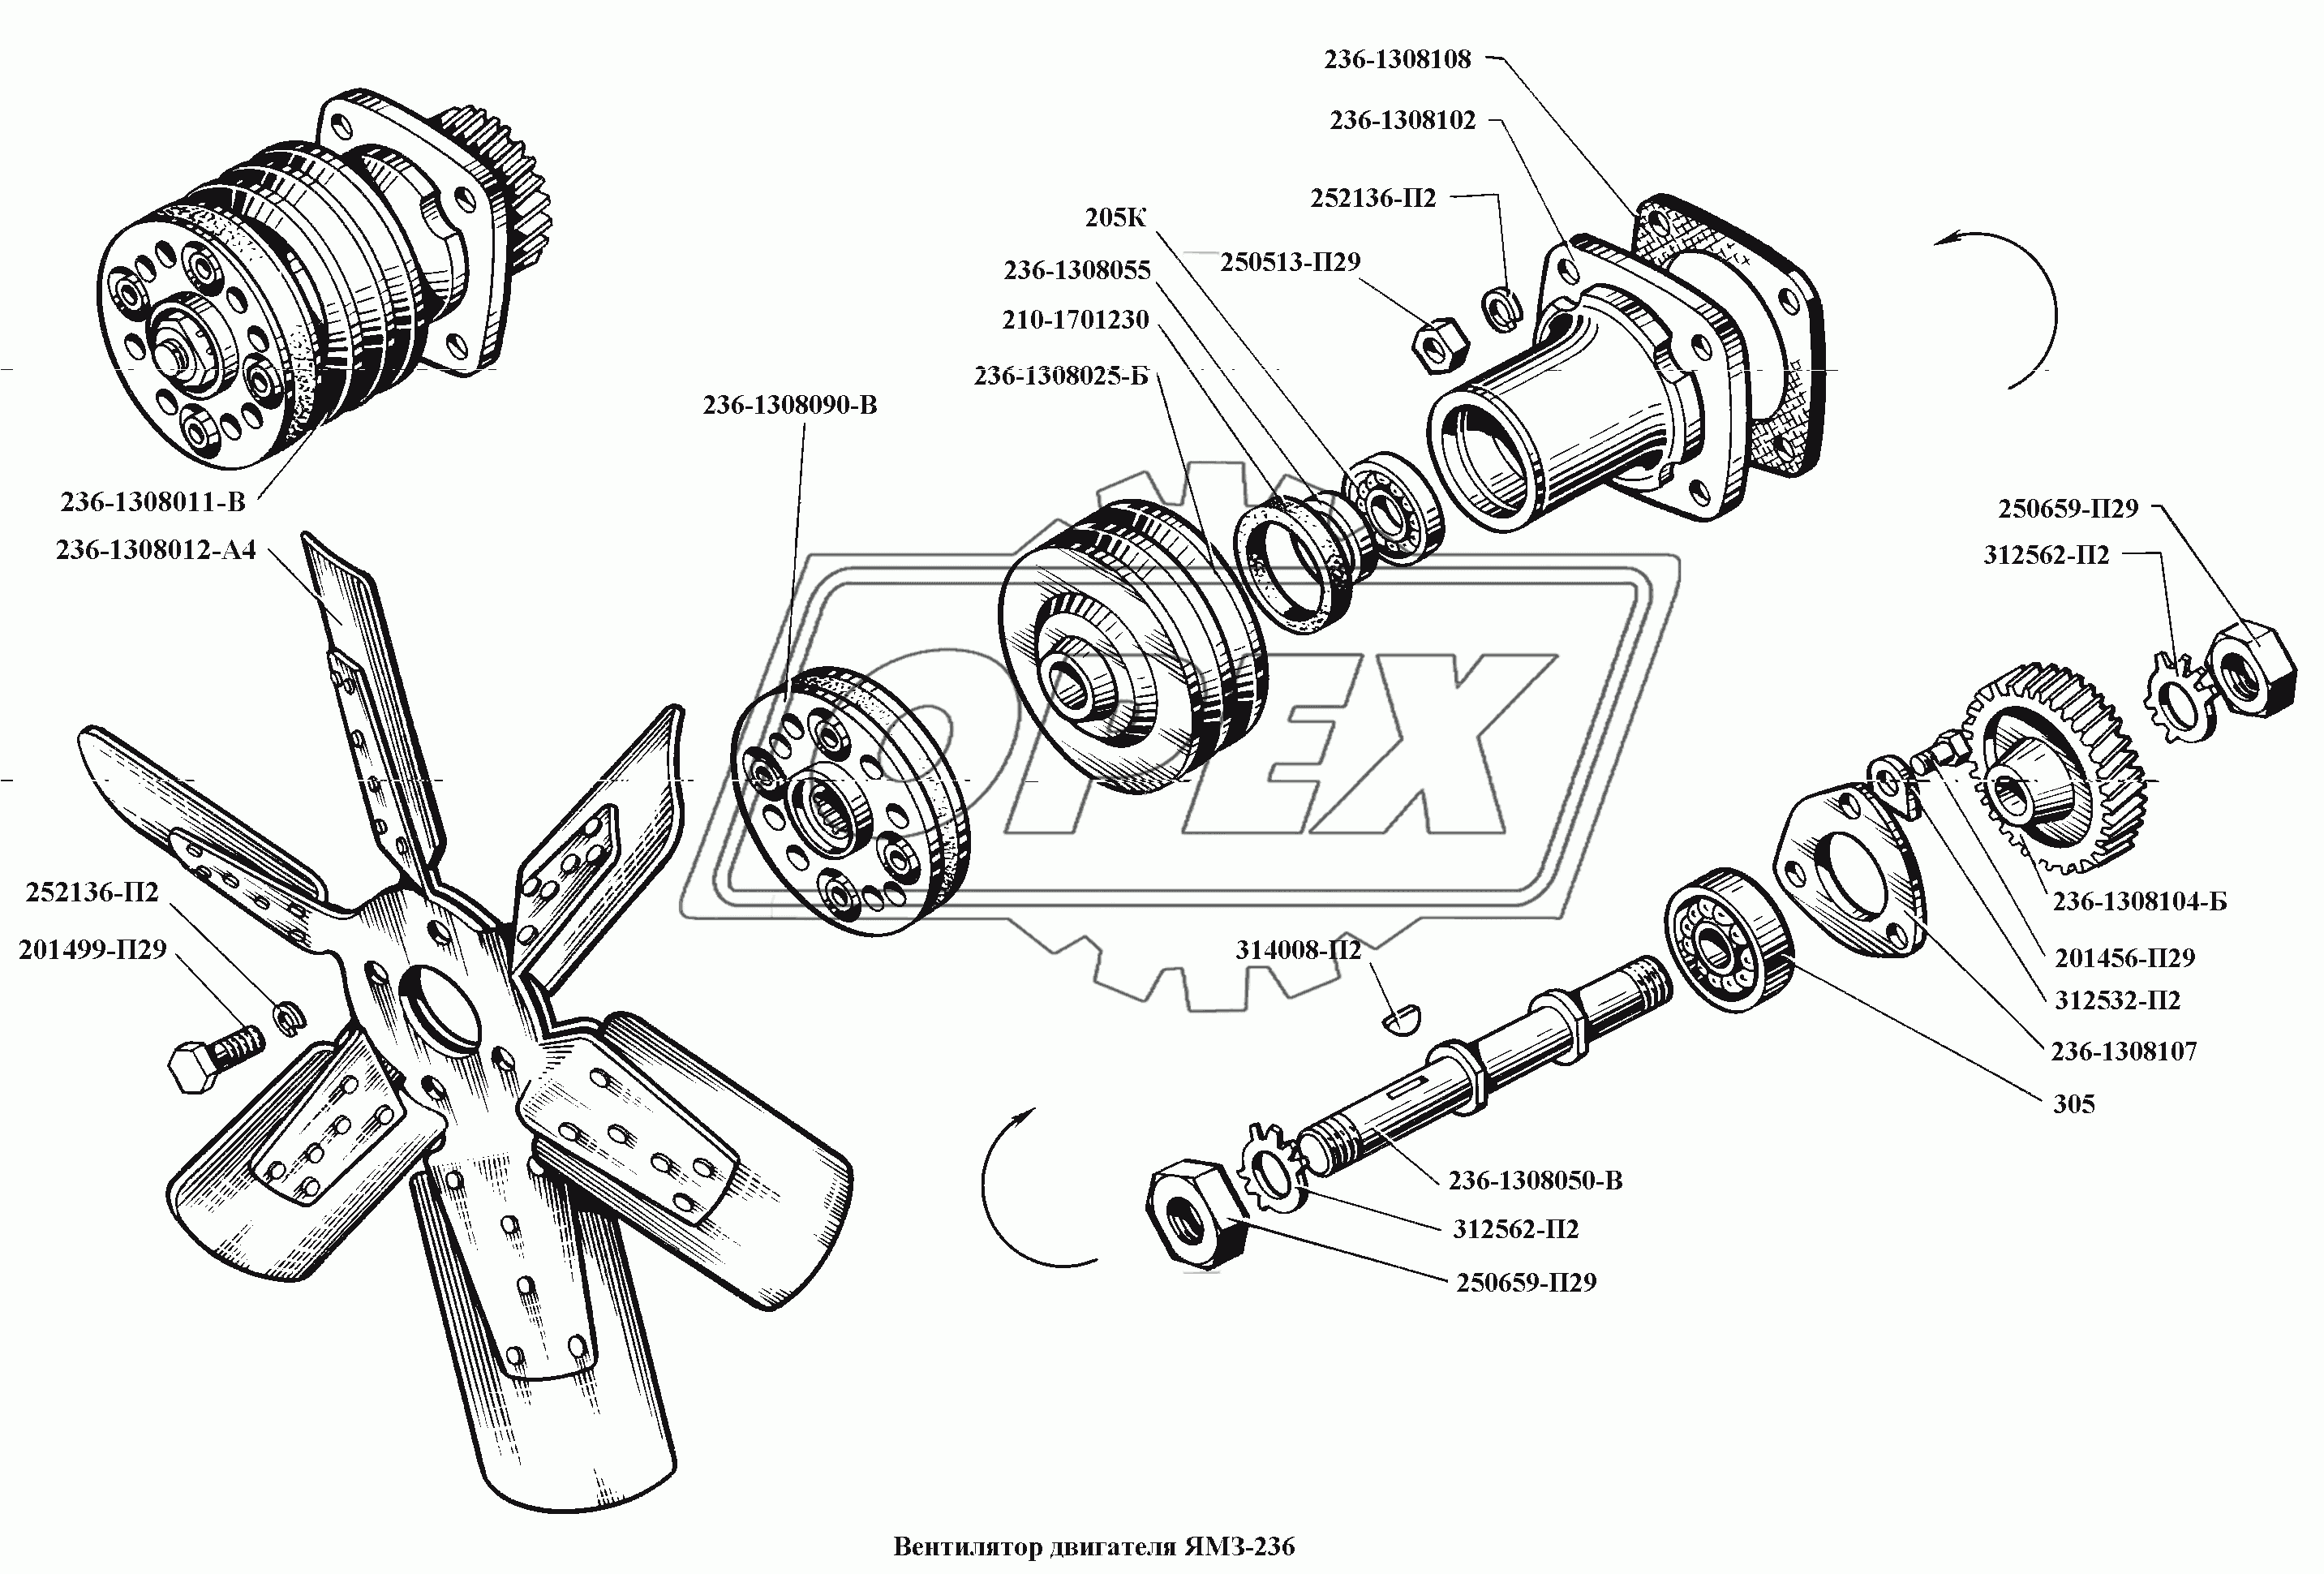 Вентилятор двигателя ЯМЗ-236